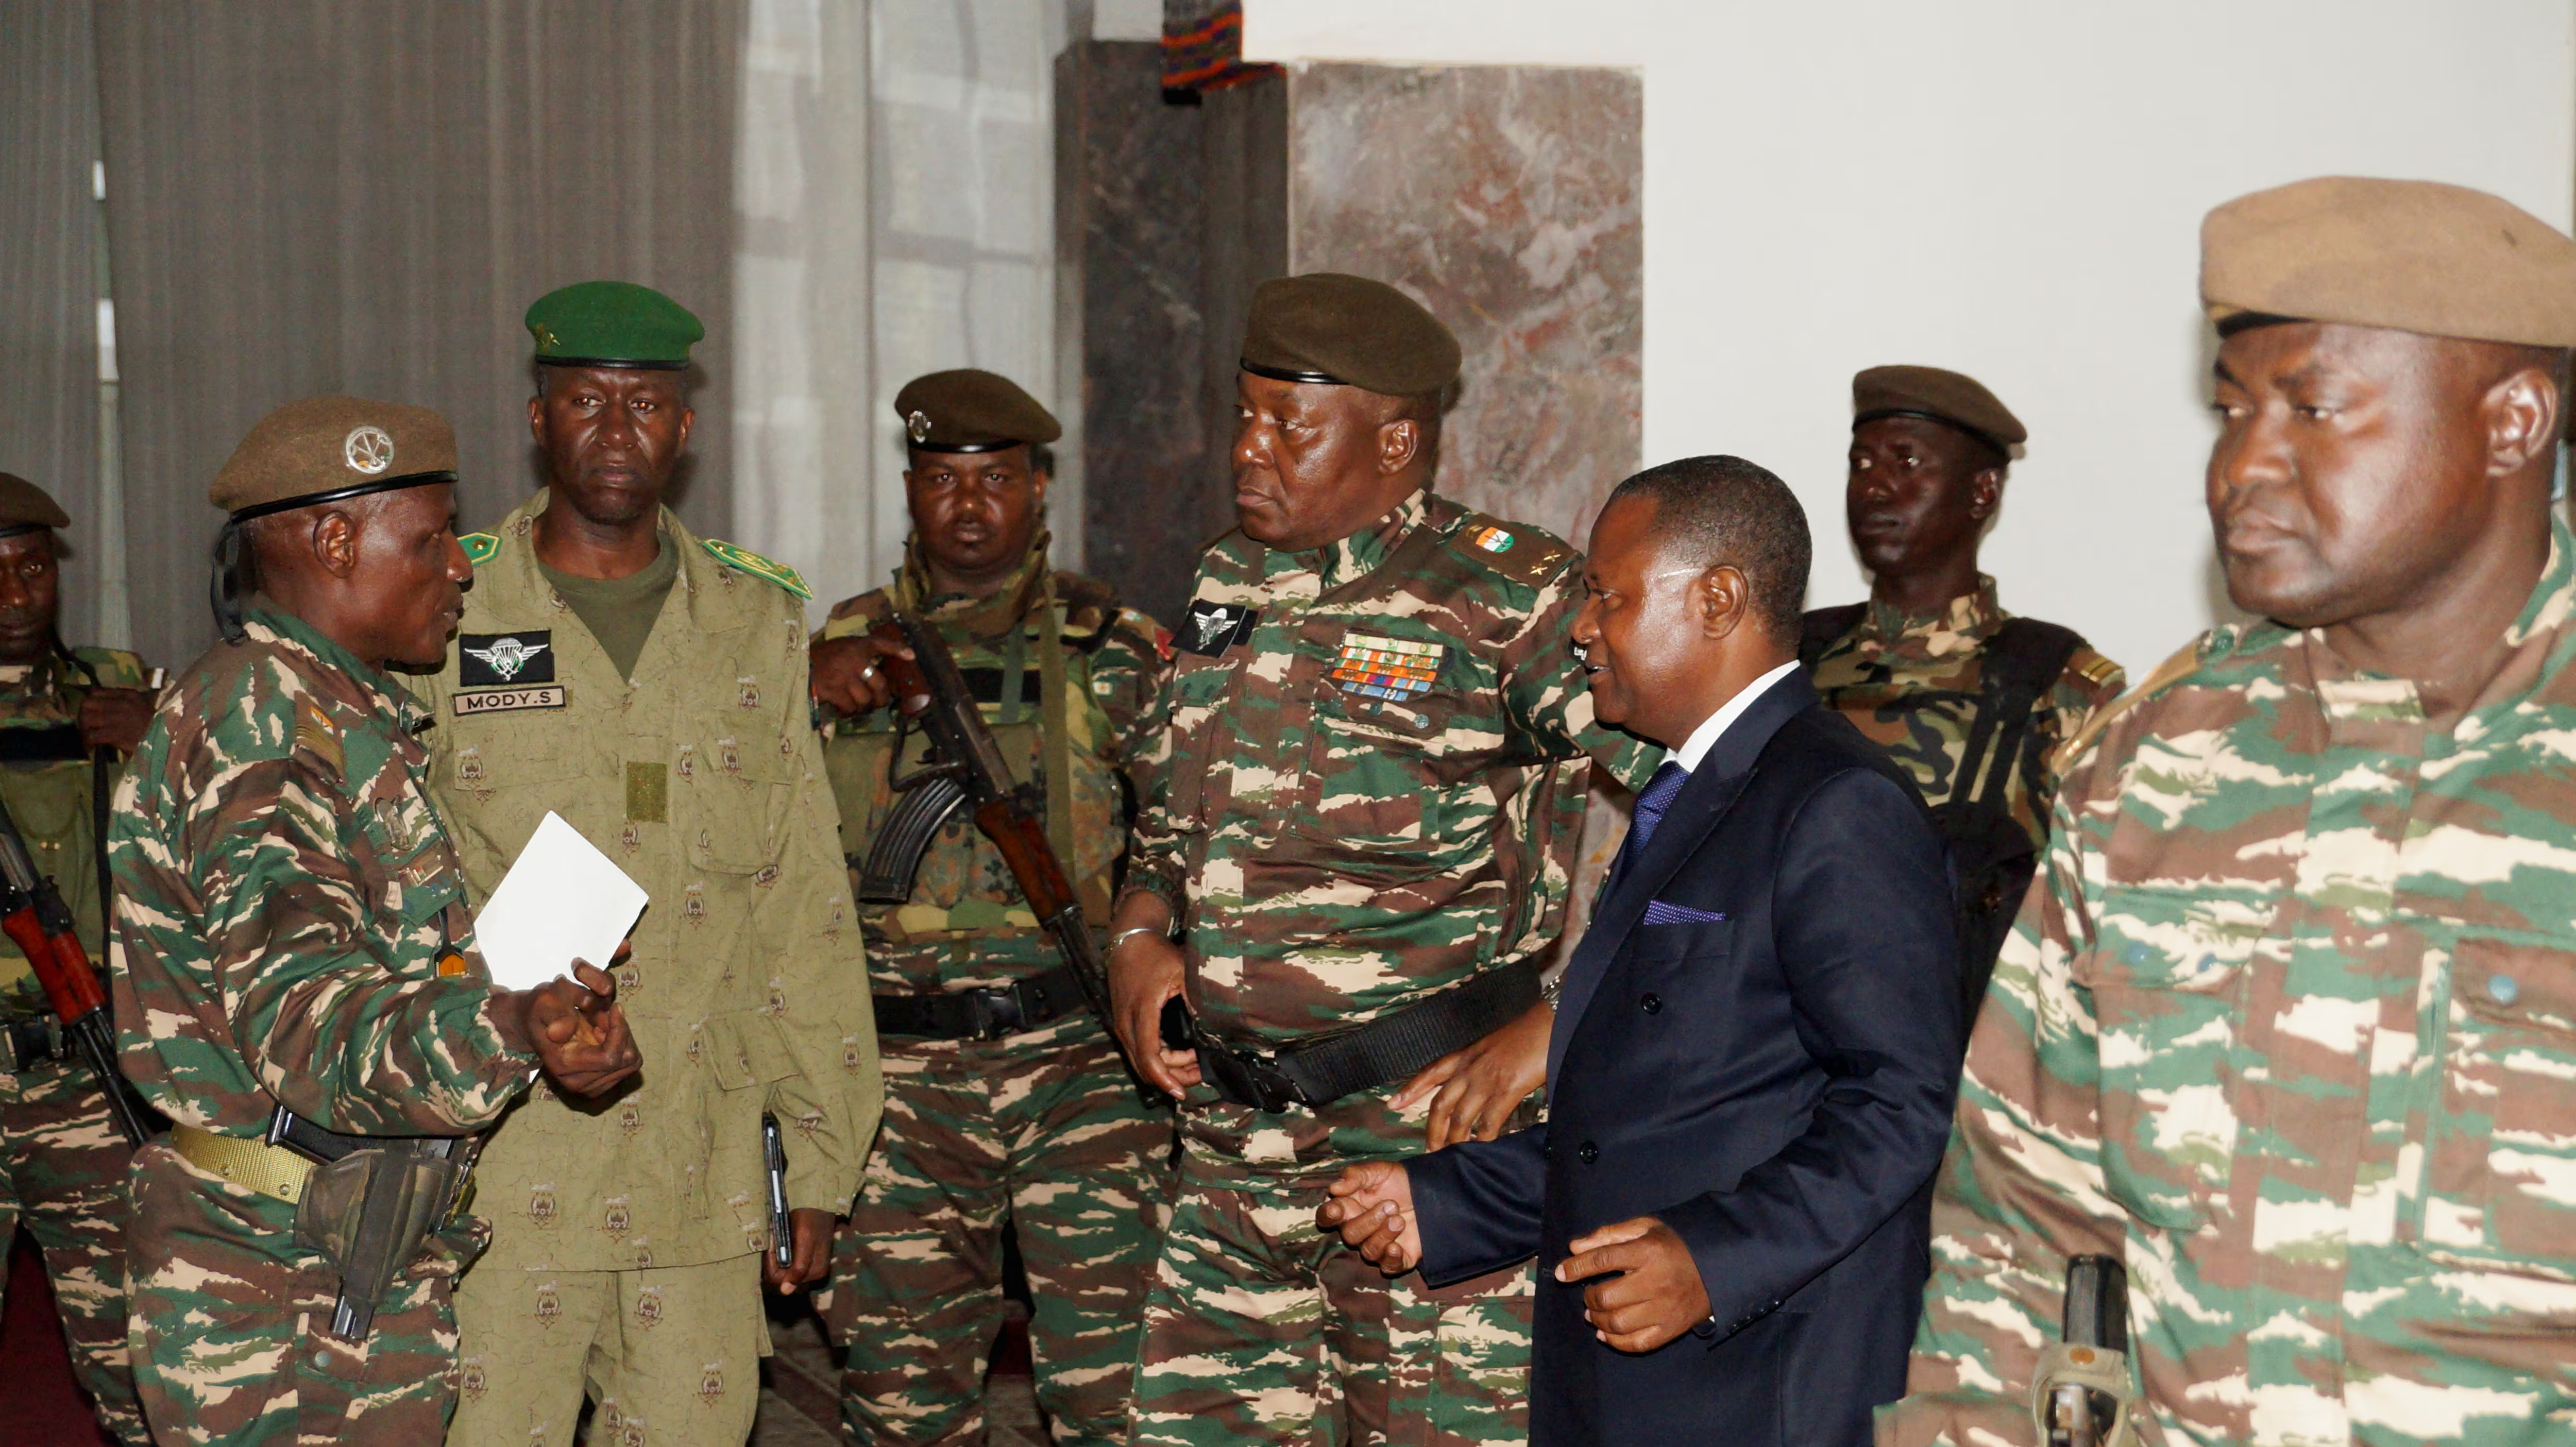 جون أفريك: تحالف التبو والطوارق يهدد سلطة العسكر في النيجر